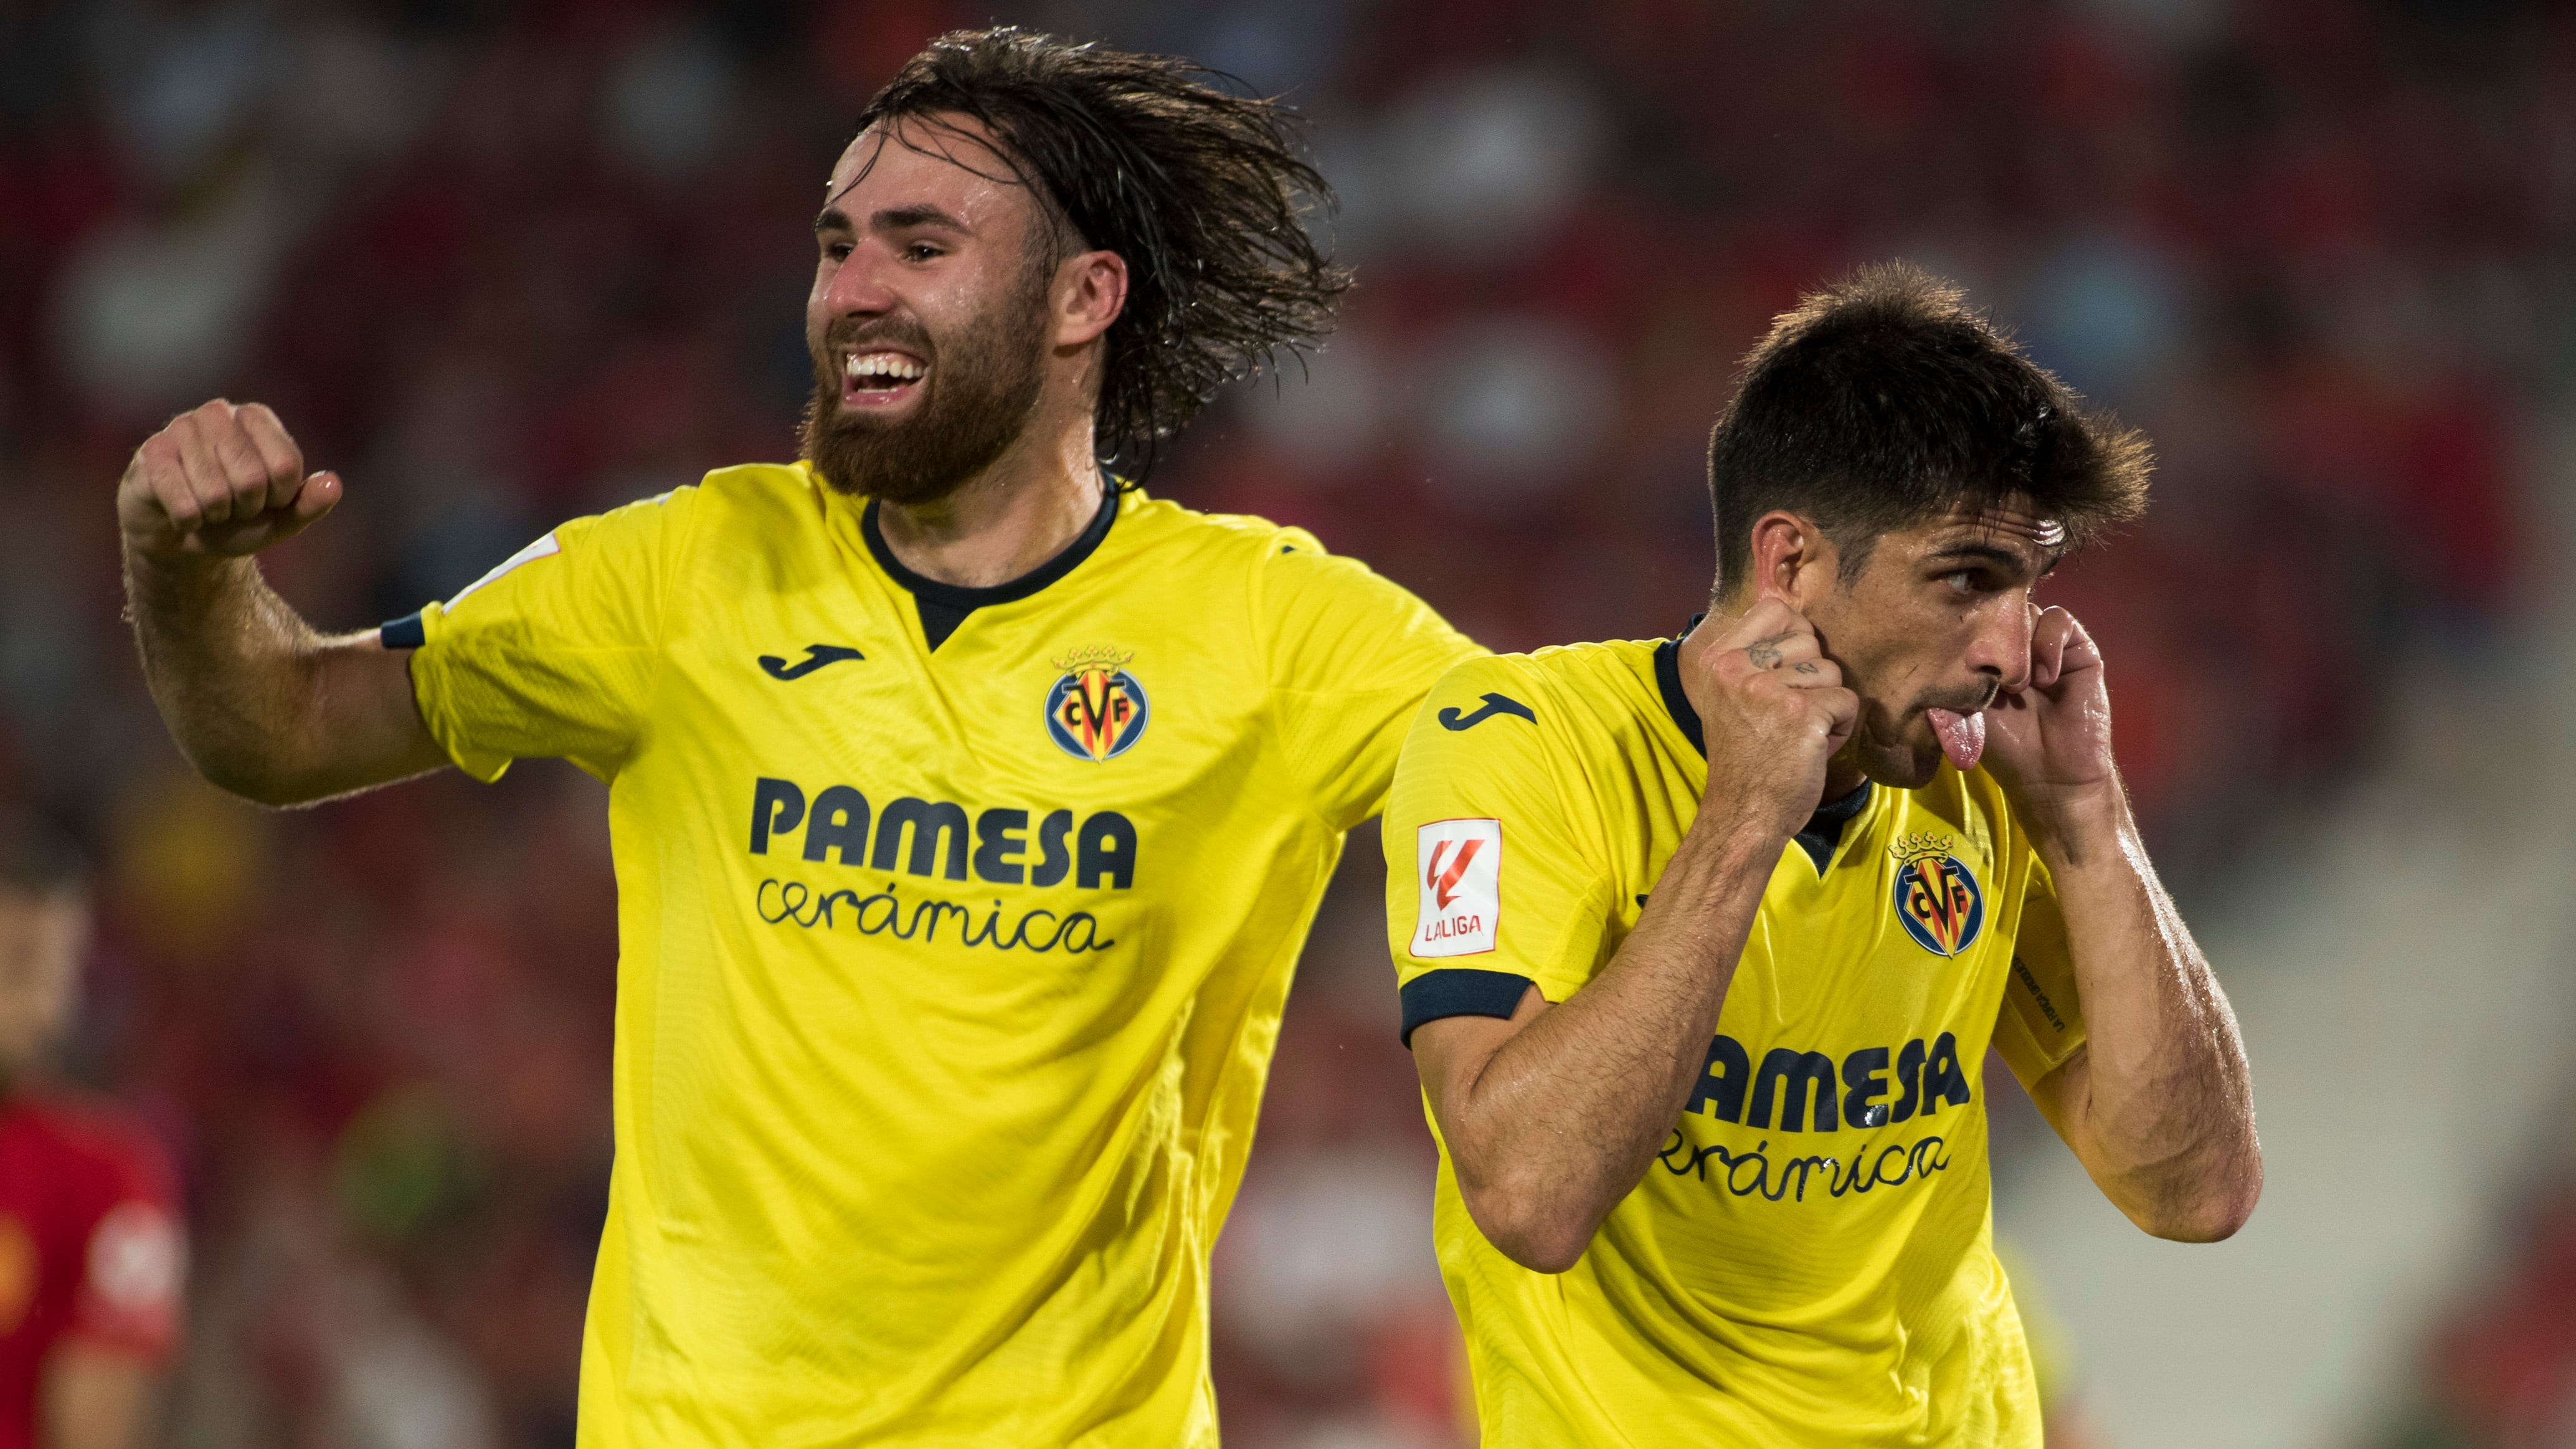 Ben Brereton Díaz y Gerard Moreno celebran el gol de Villarreal sobre Mallorca. / AFP